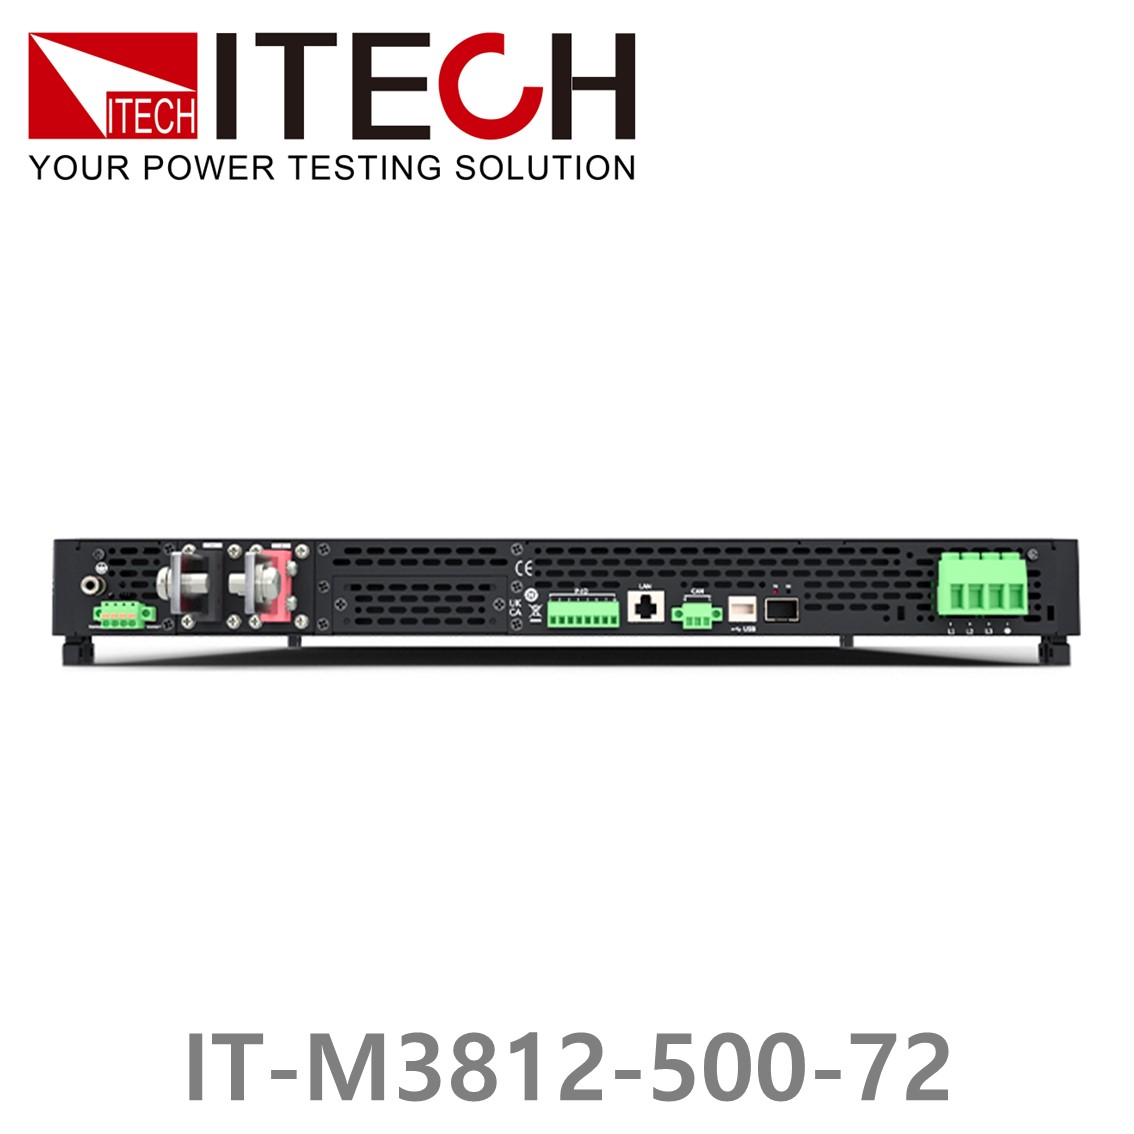 [ ITECH ] IT-M3812-500-72, 500V/72A/12000W DC 전자로드, DC전자부하기